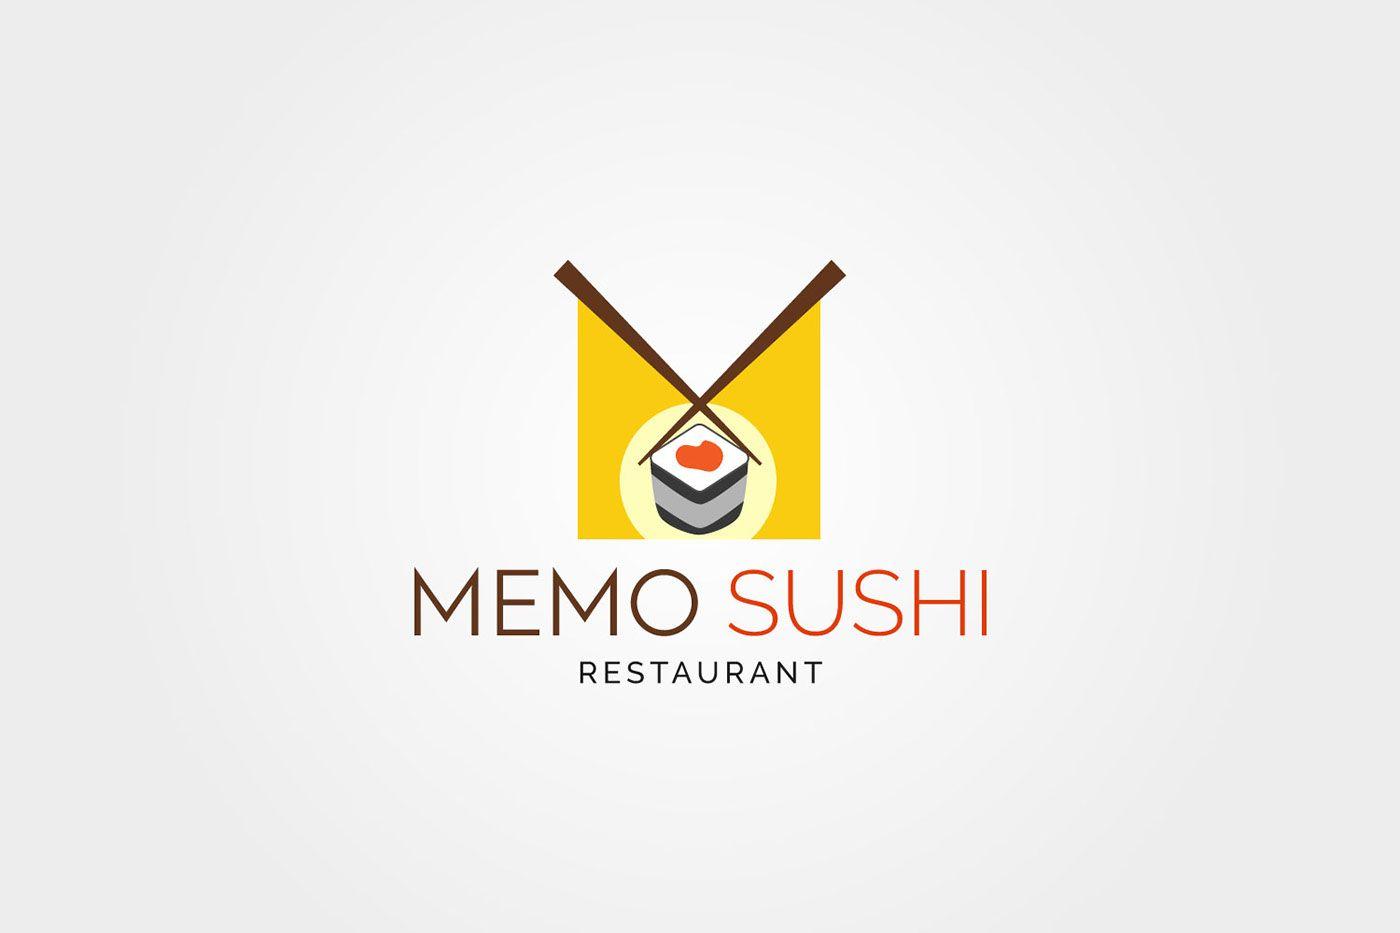 Cool Japanese Restaurant Logo - MEMO SUSHI Restaurant LOGO on Behance